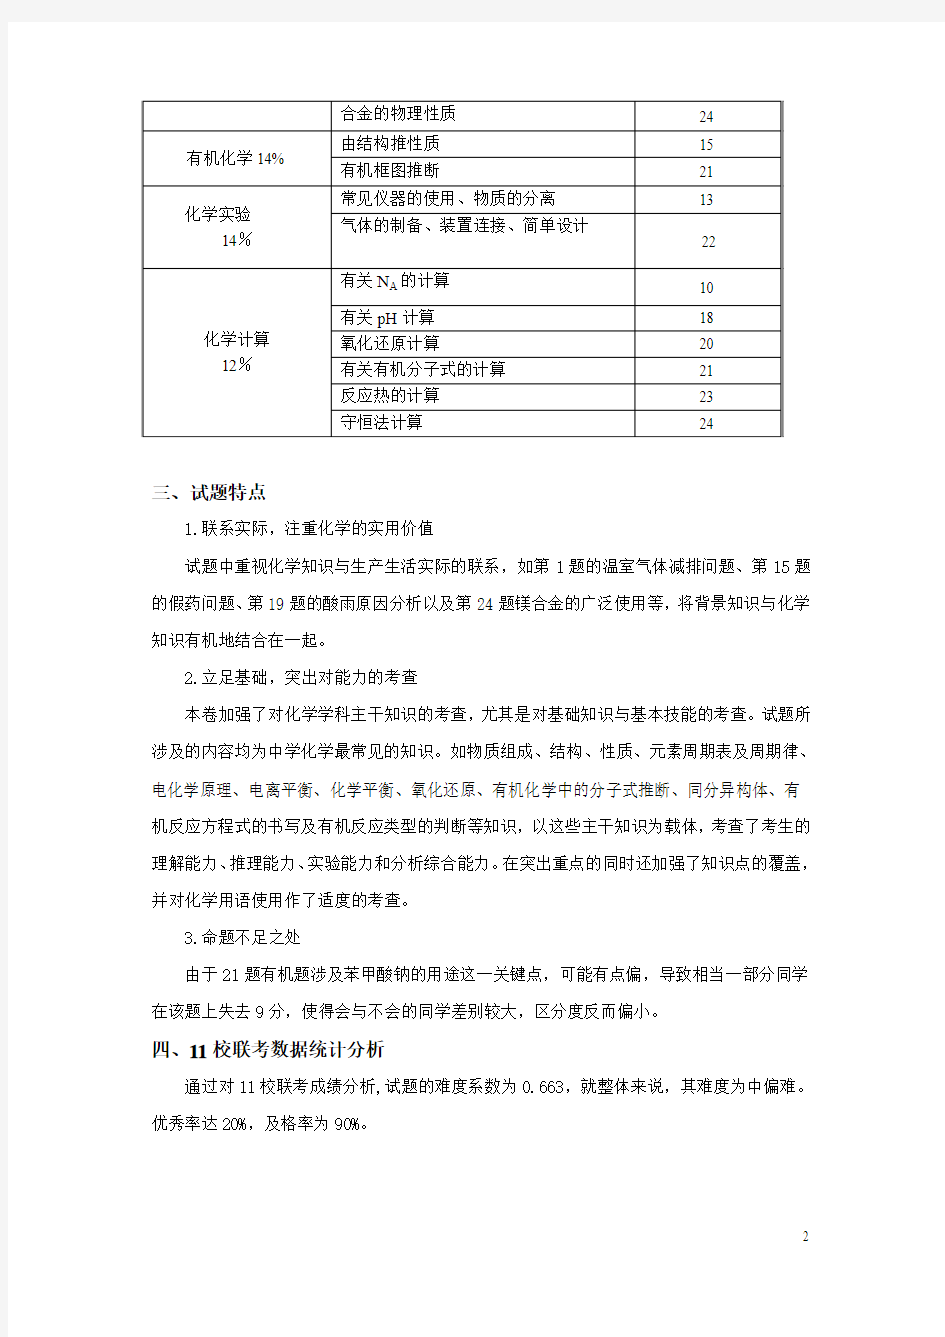 台州市高三化学期末试卷分析(2008、2)